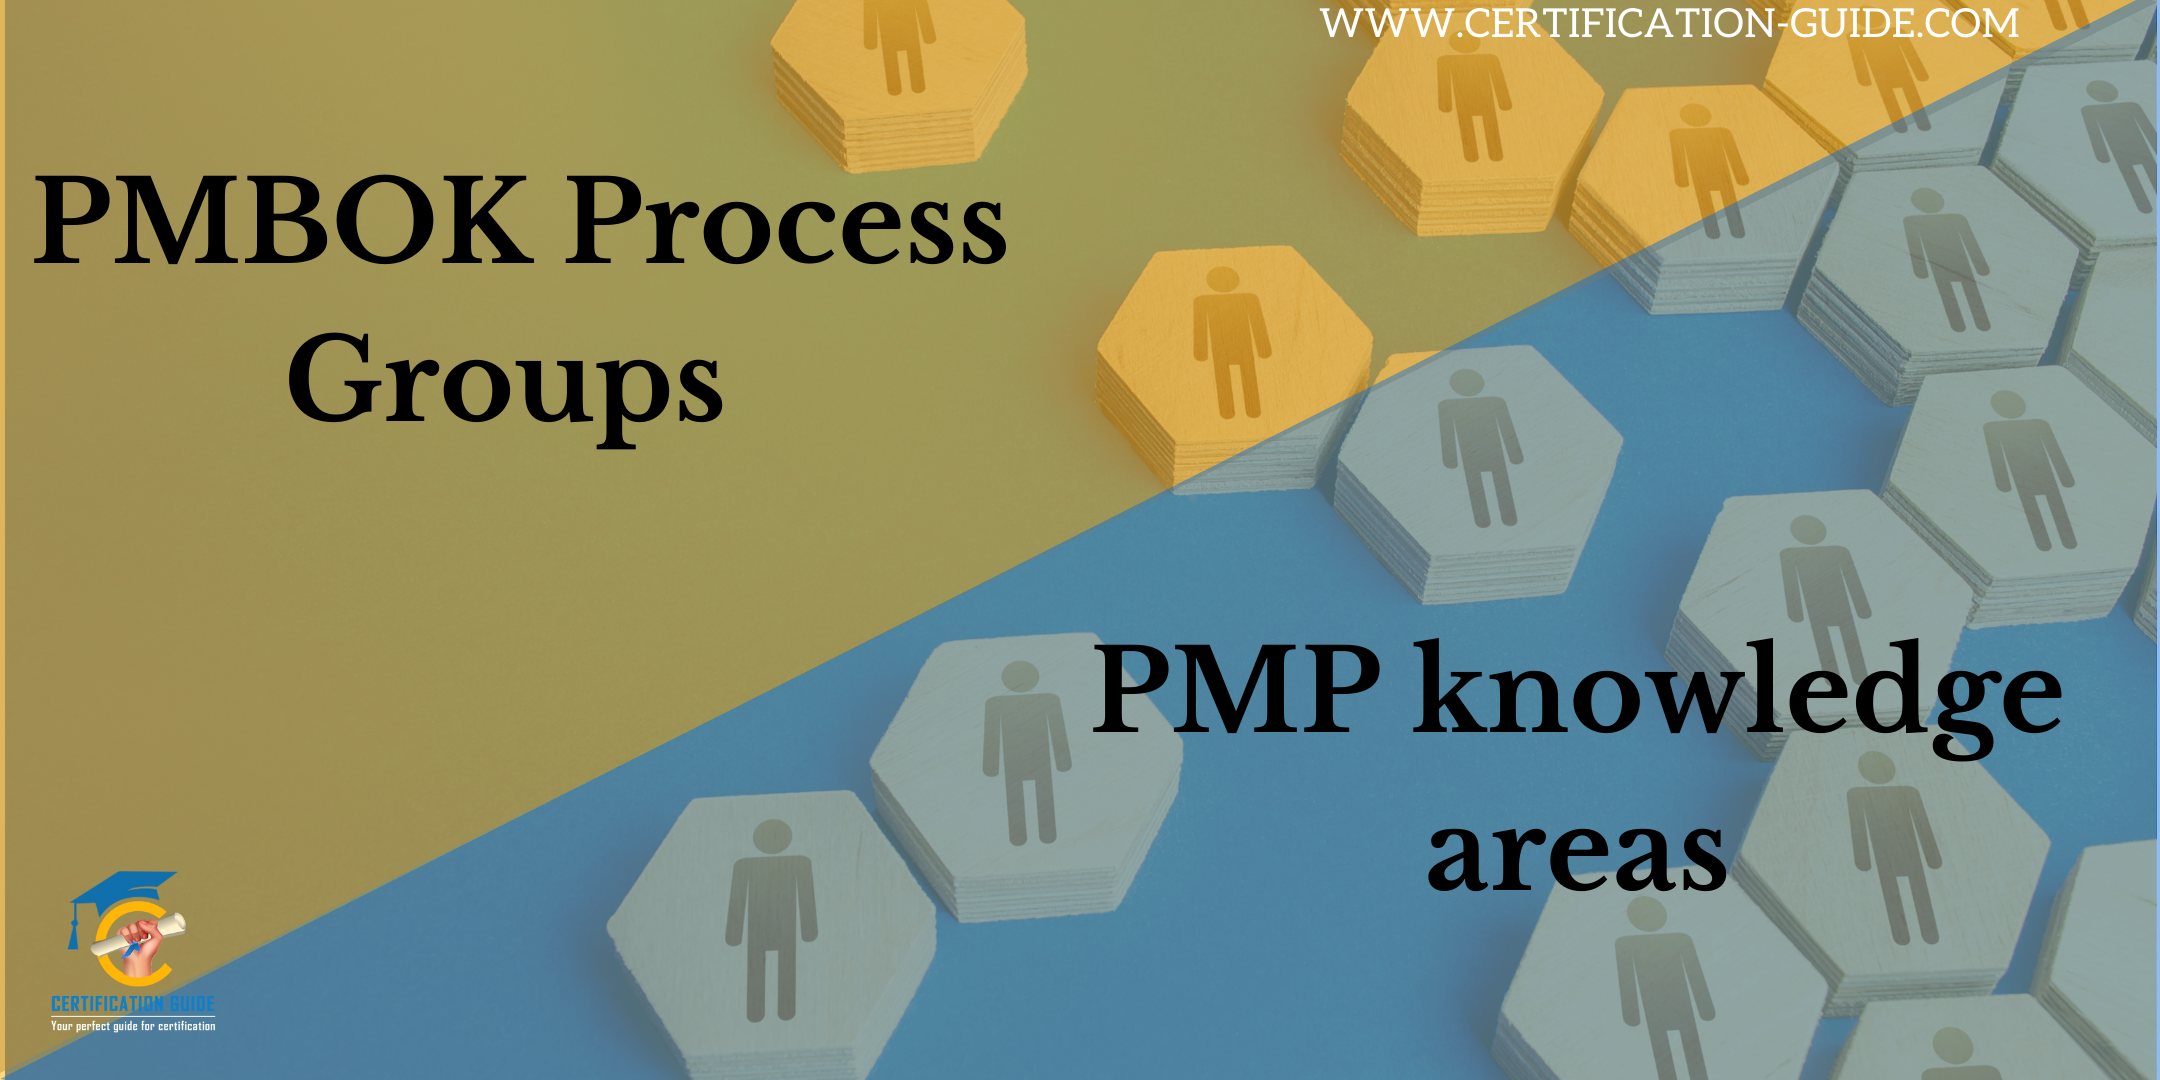 PMBOK Process Groups